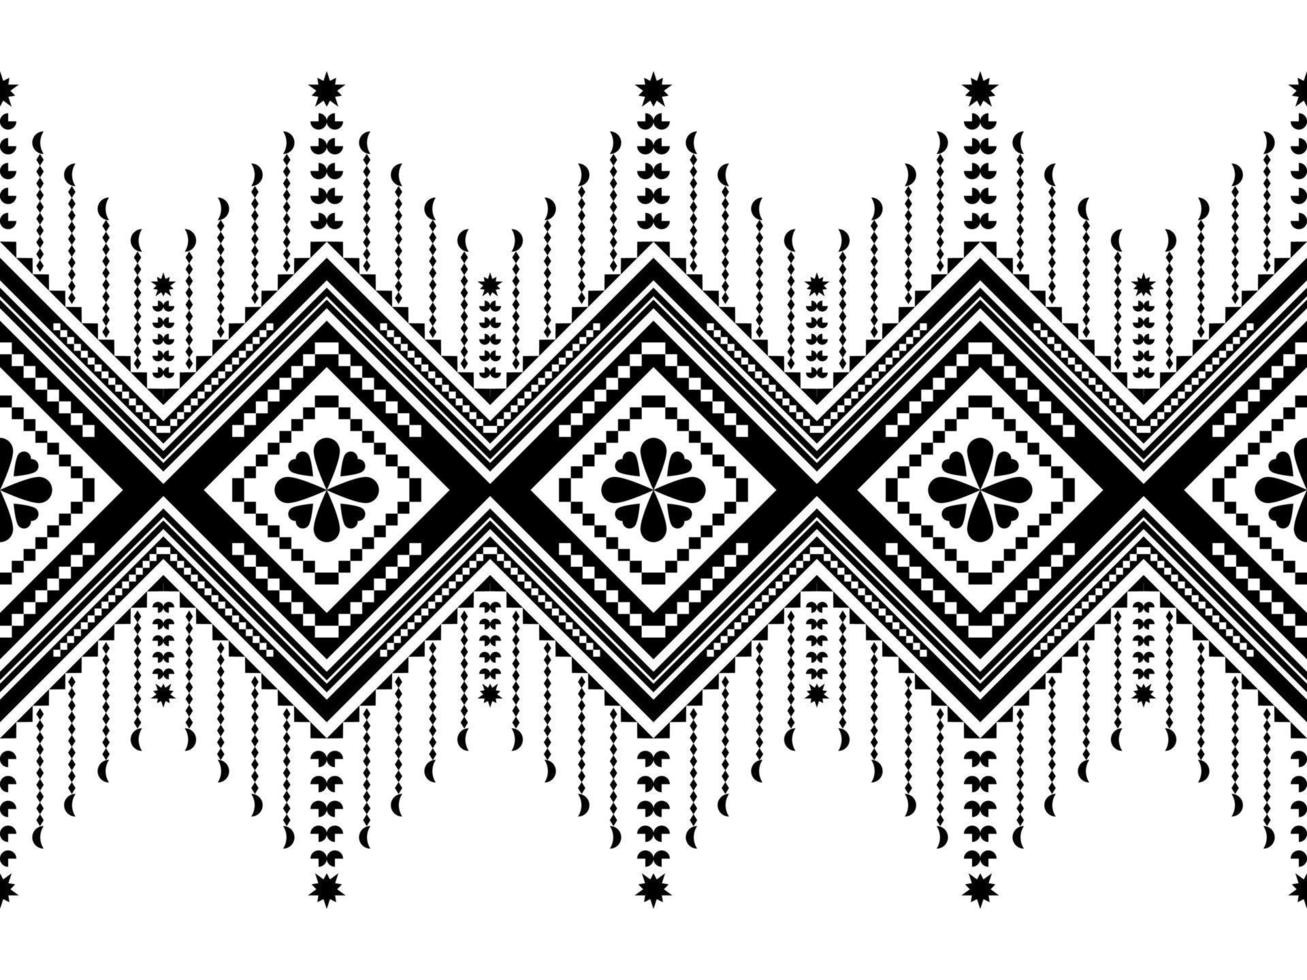 abstraktes ethnisches geometrisches musterdesign für hintergrund oder tapete.ethnisches geometrisches druckmusterdesign aztekische sich wiederholende hintergrundtextur in schwarz und weiß. Stoff, Stoffdesign, Verpackung vektor